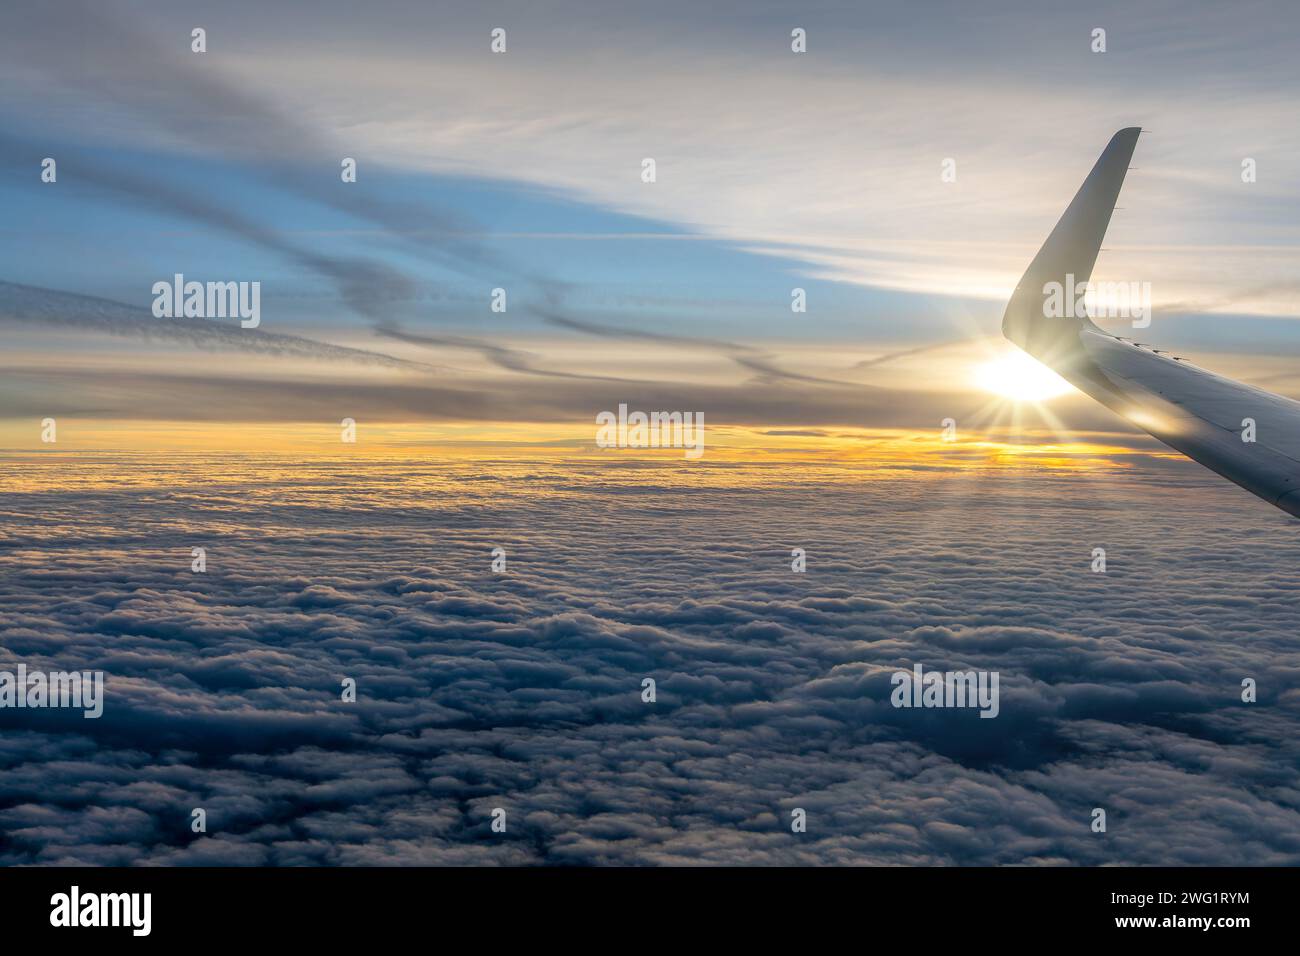 Vue depuis une fenêtre d'avion sur une mer de nuages au coucher du soleil avec l'aile de l'avion Banque D'Images